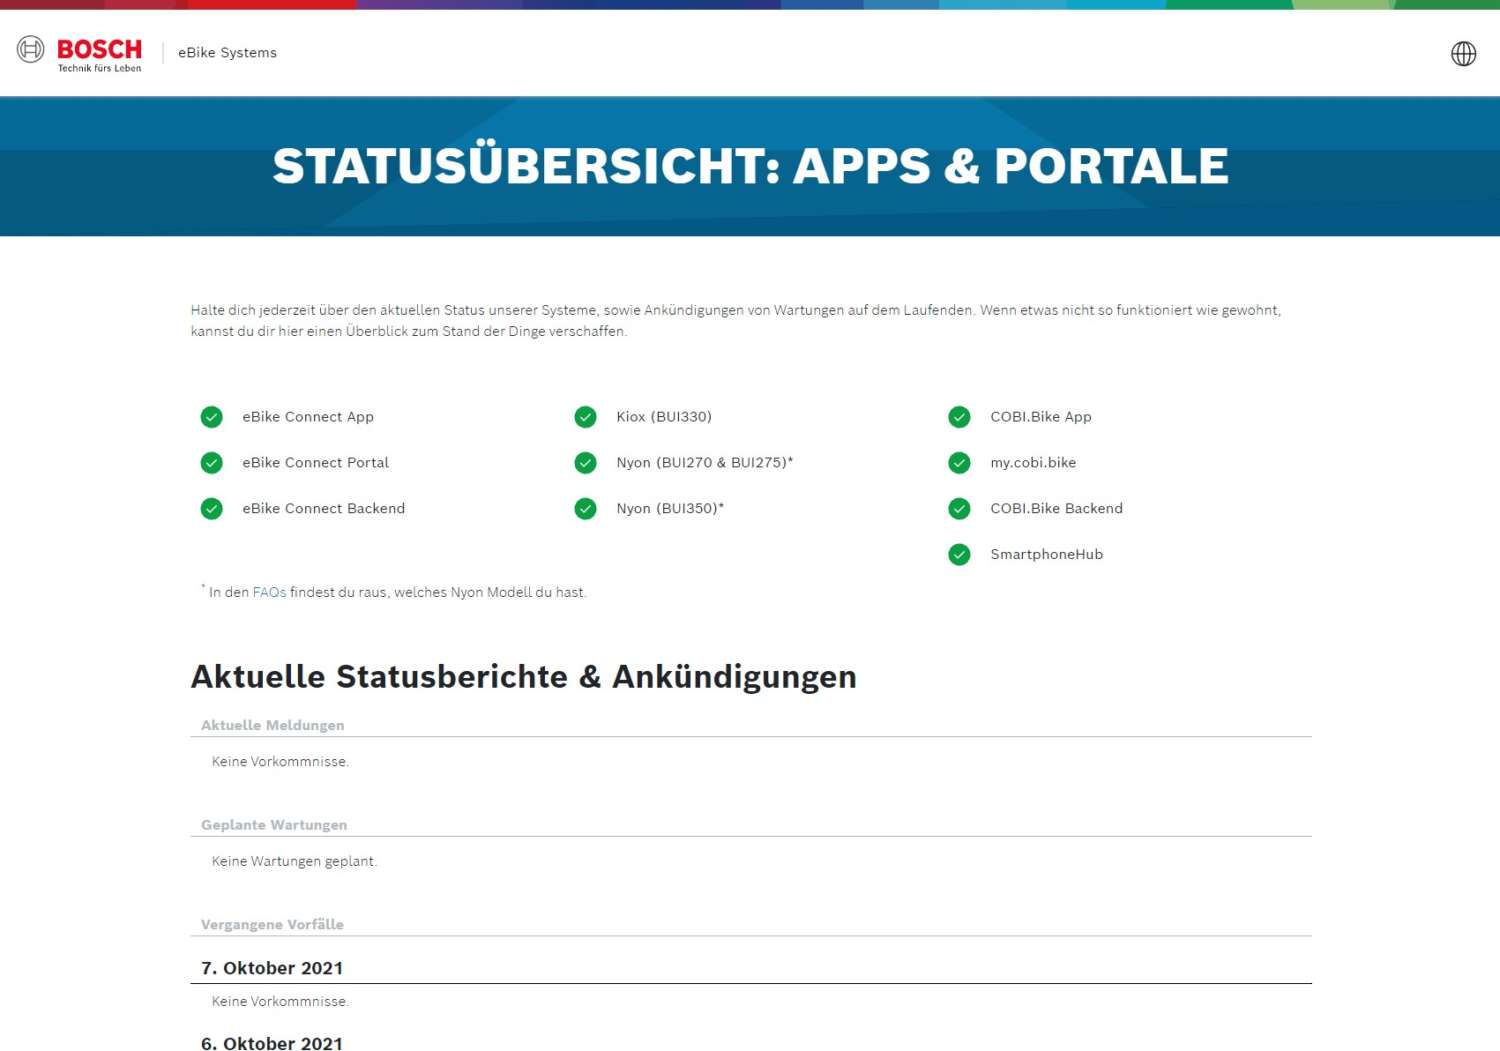 Statusübersicht Bosch eBike Systems